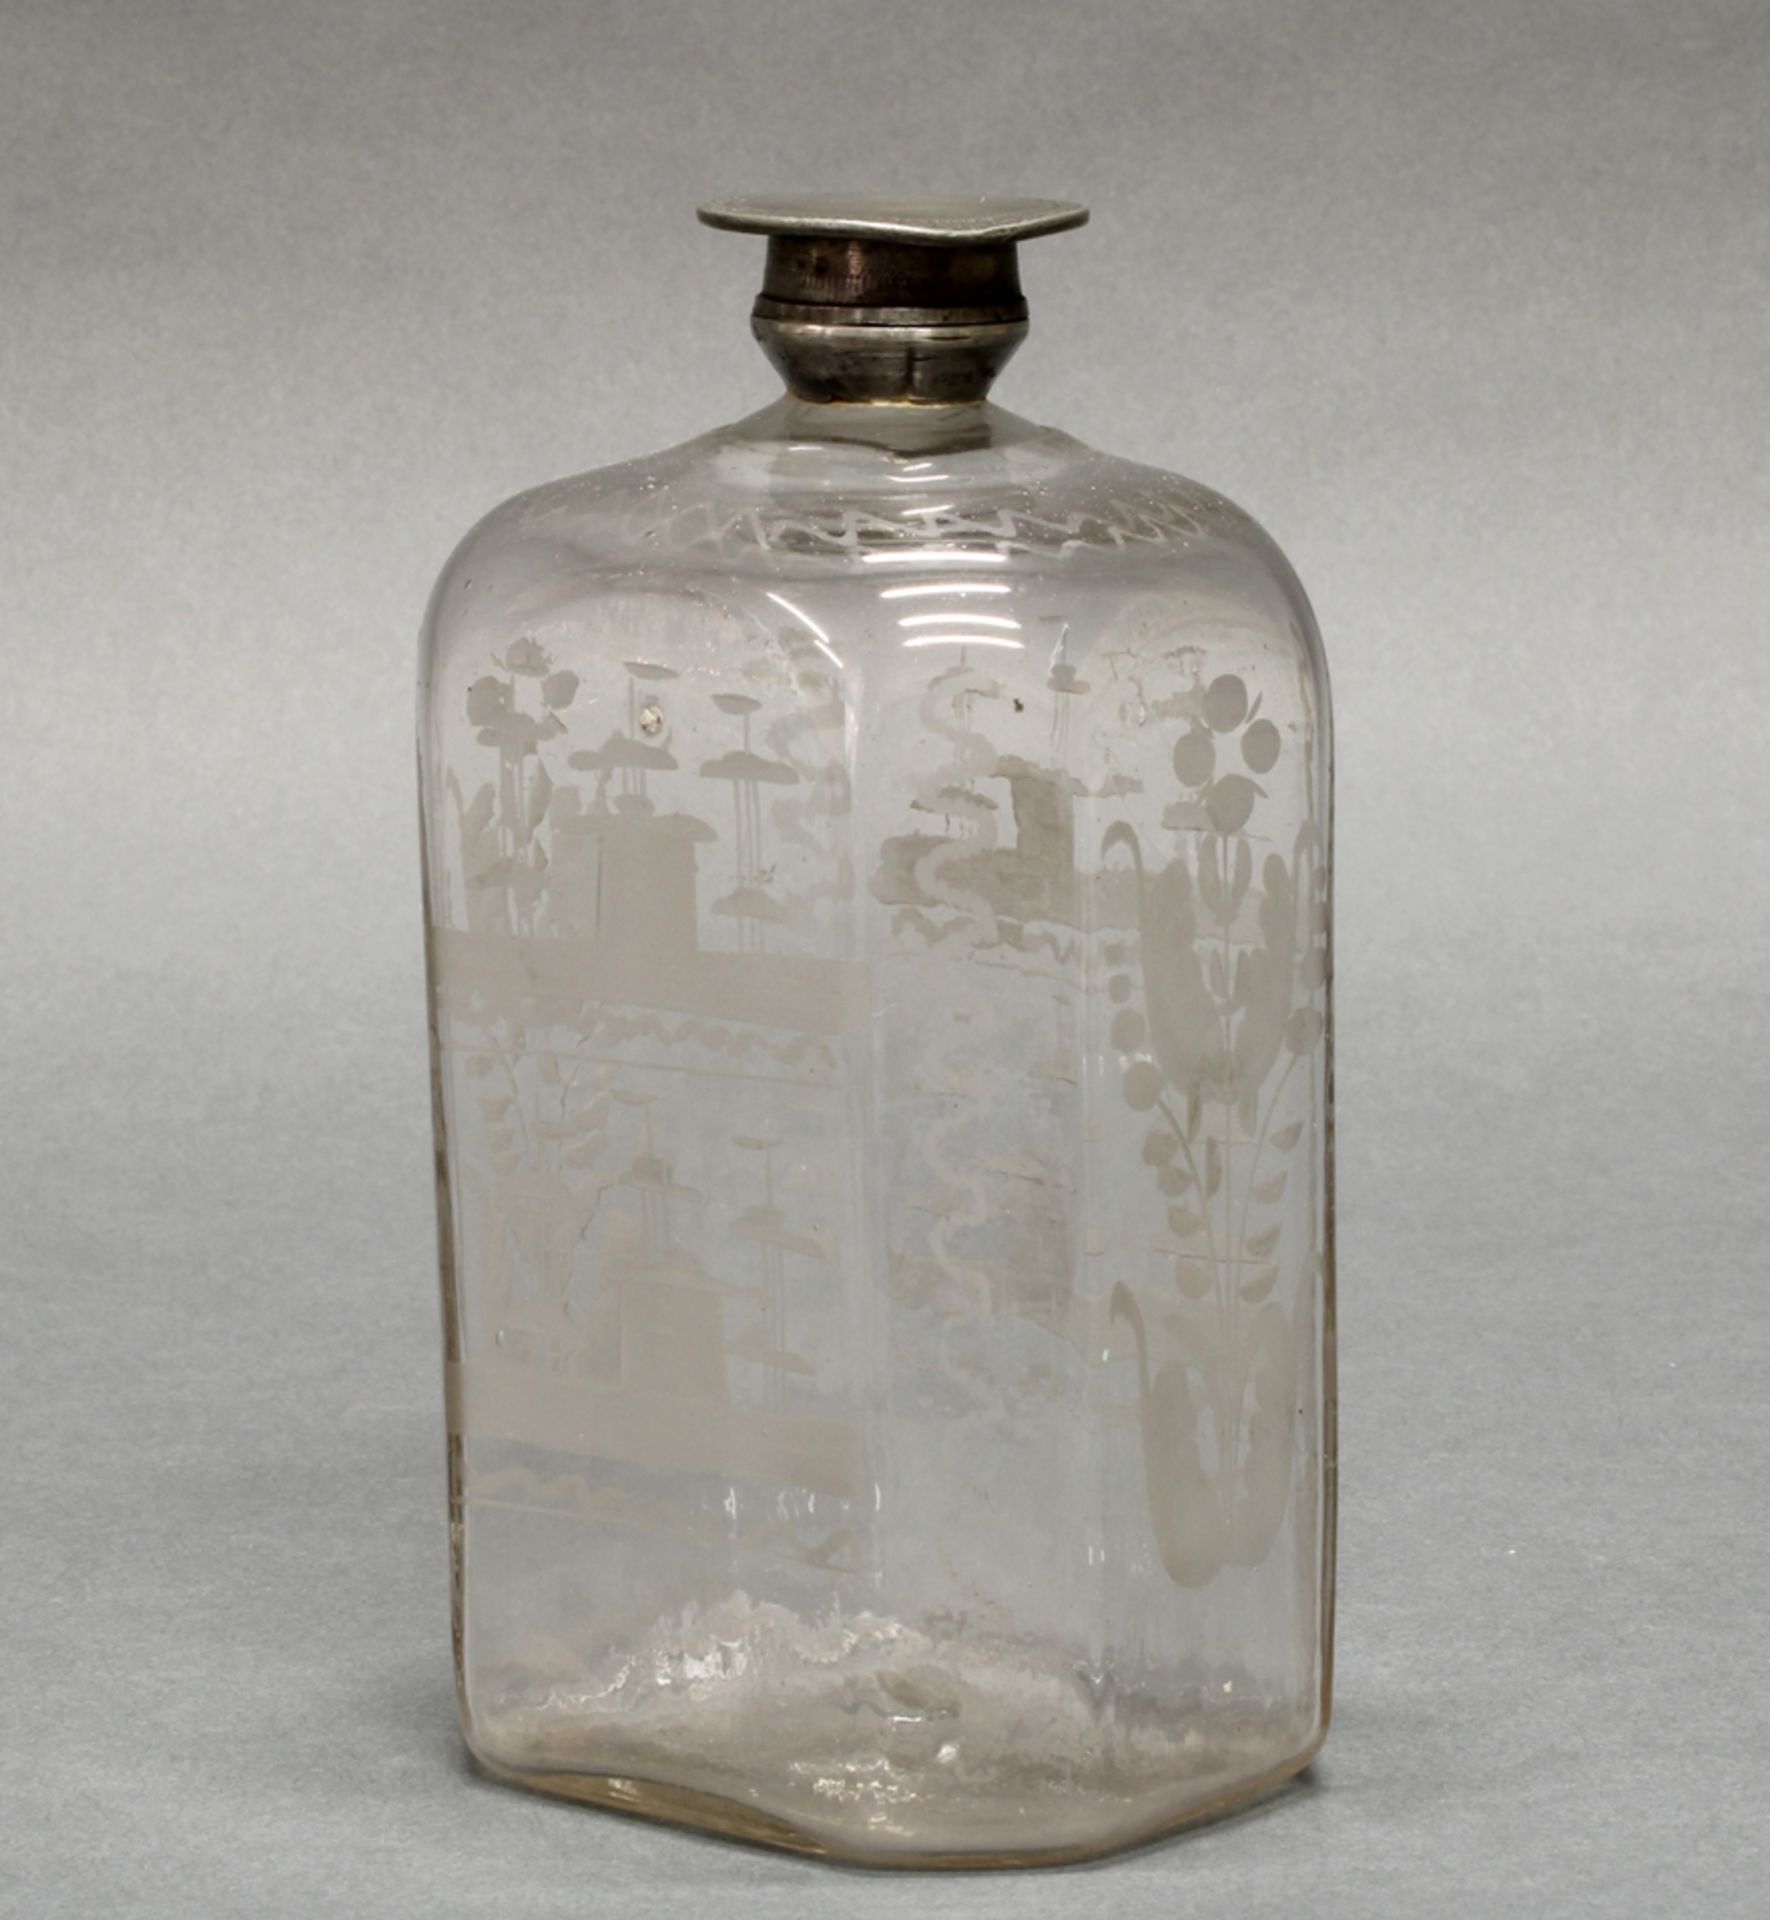 3 Glasflaschen, deutsch, Anfang 19. Jh., farblos, 1x vierseitig, 2x oktogonal, geschnittene Blüten- - Image 2 of 4